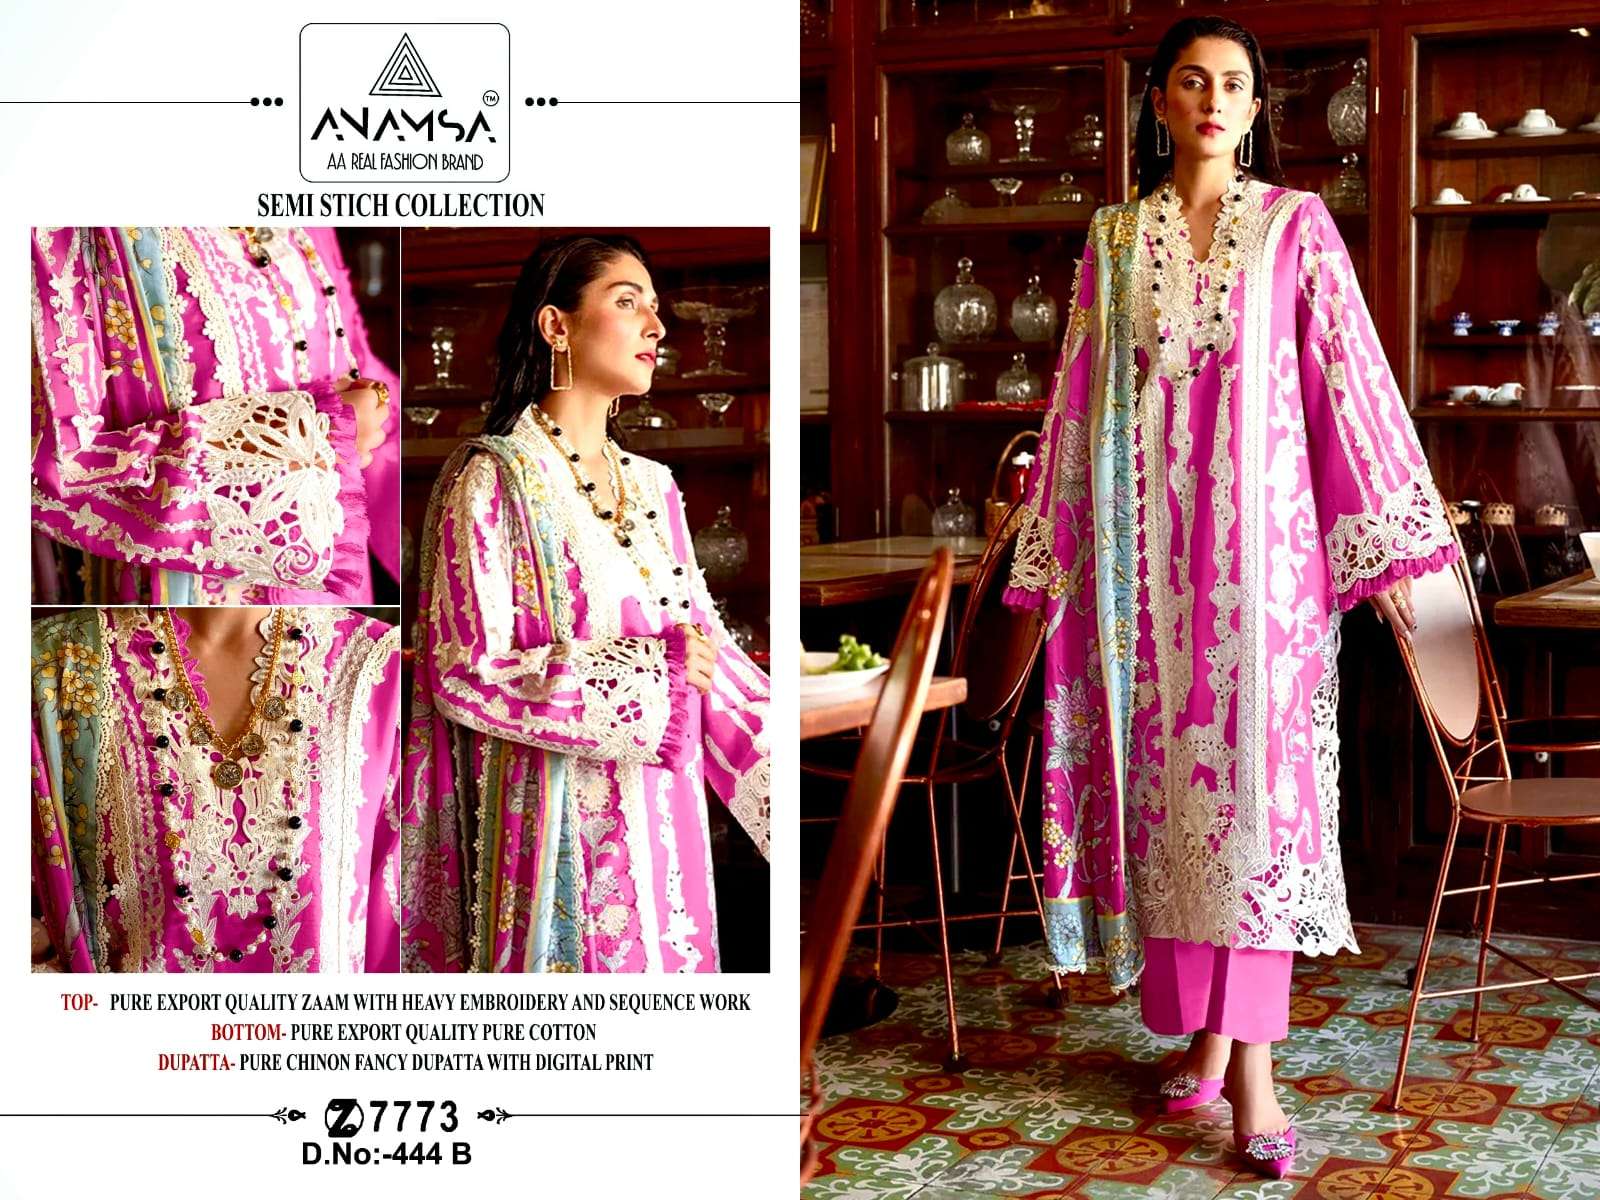 Anamsa 444 A To D Hit Colors Pakistani Suit Wholesale catalog